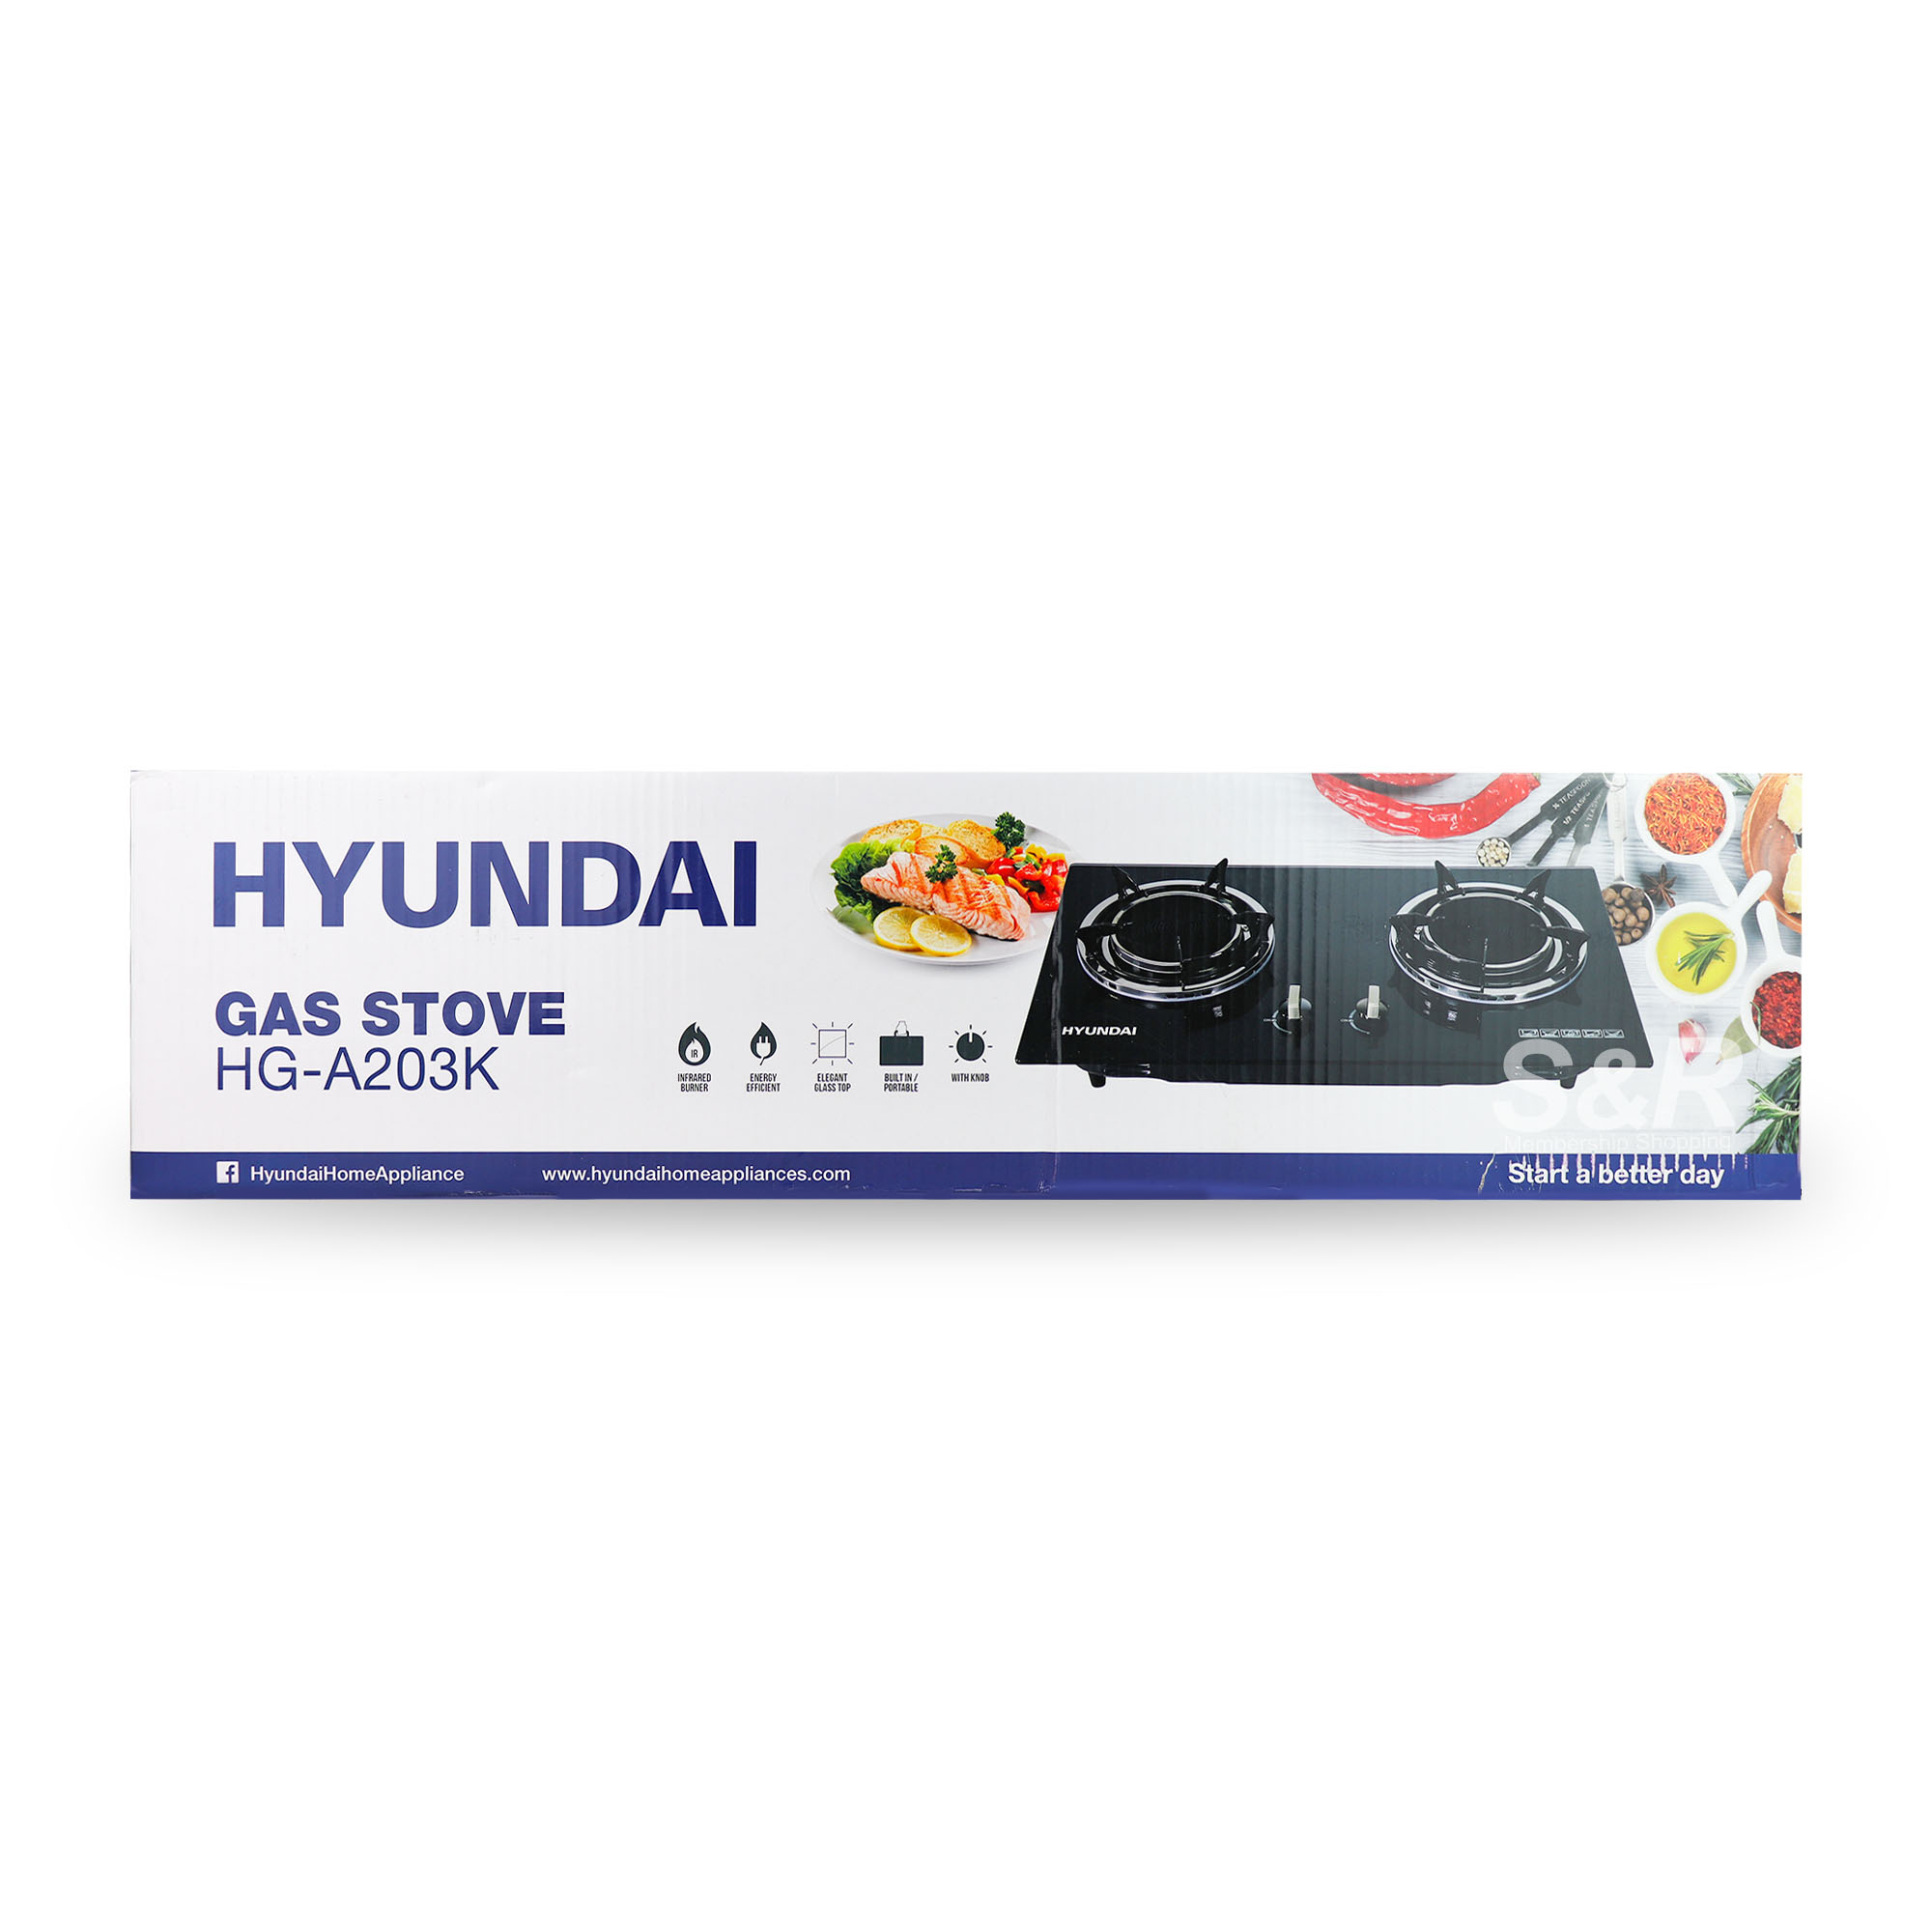 Hyundai Gas Stove HG-A203K